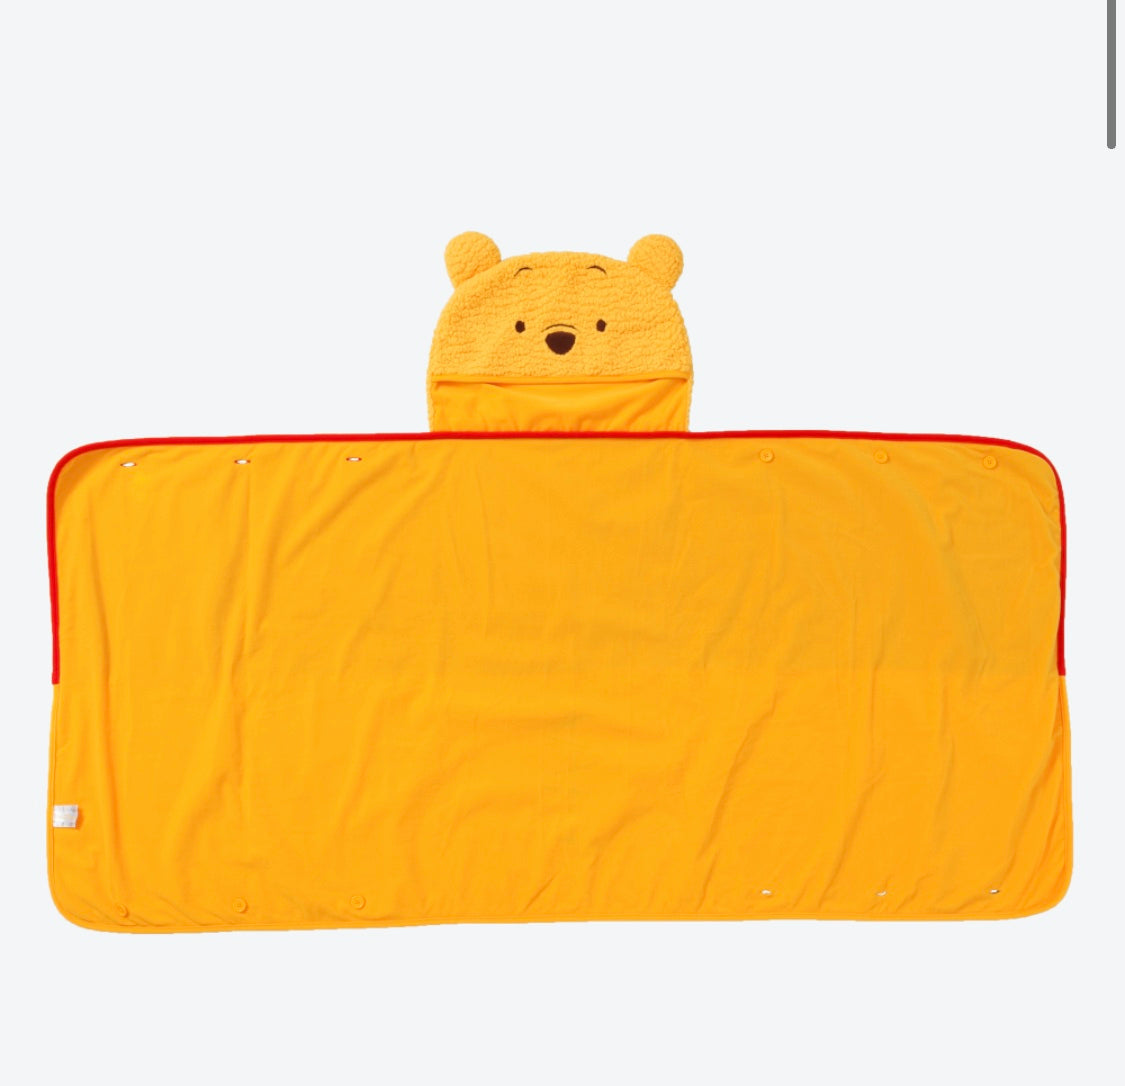 TRD - Winnie the Pooh 4-way Blanket